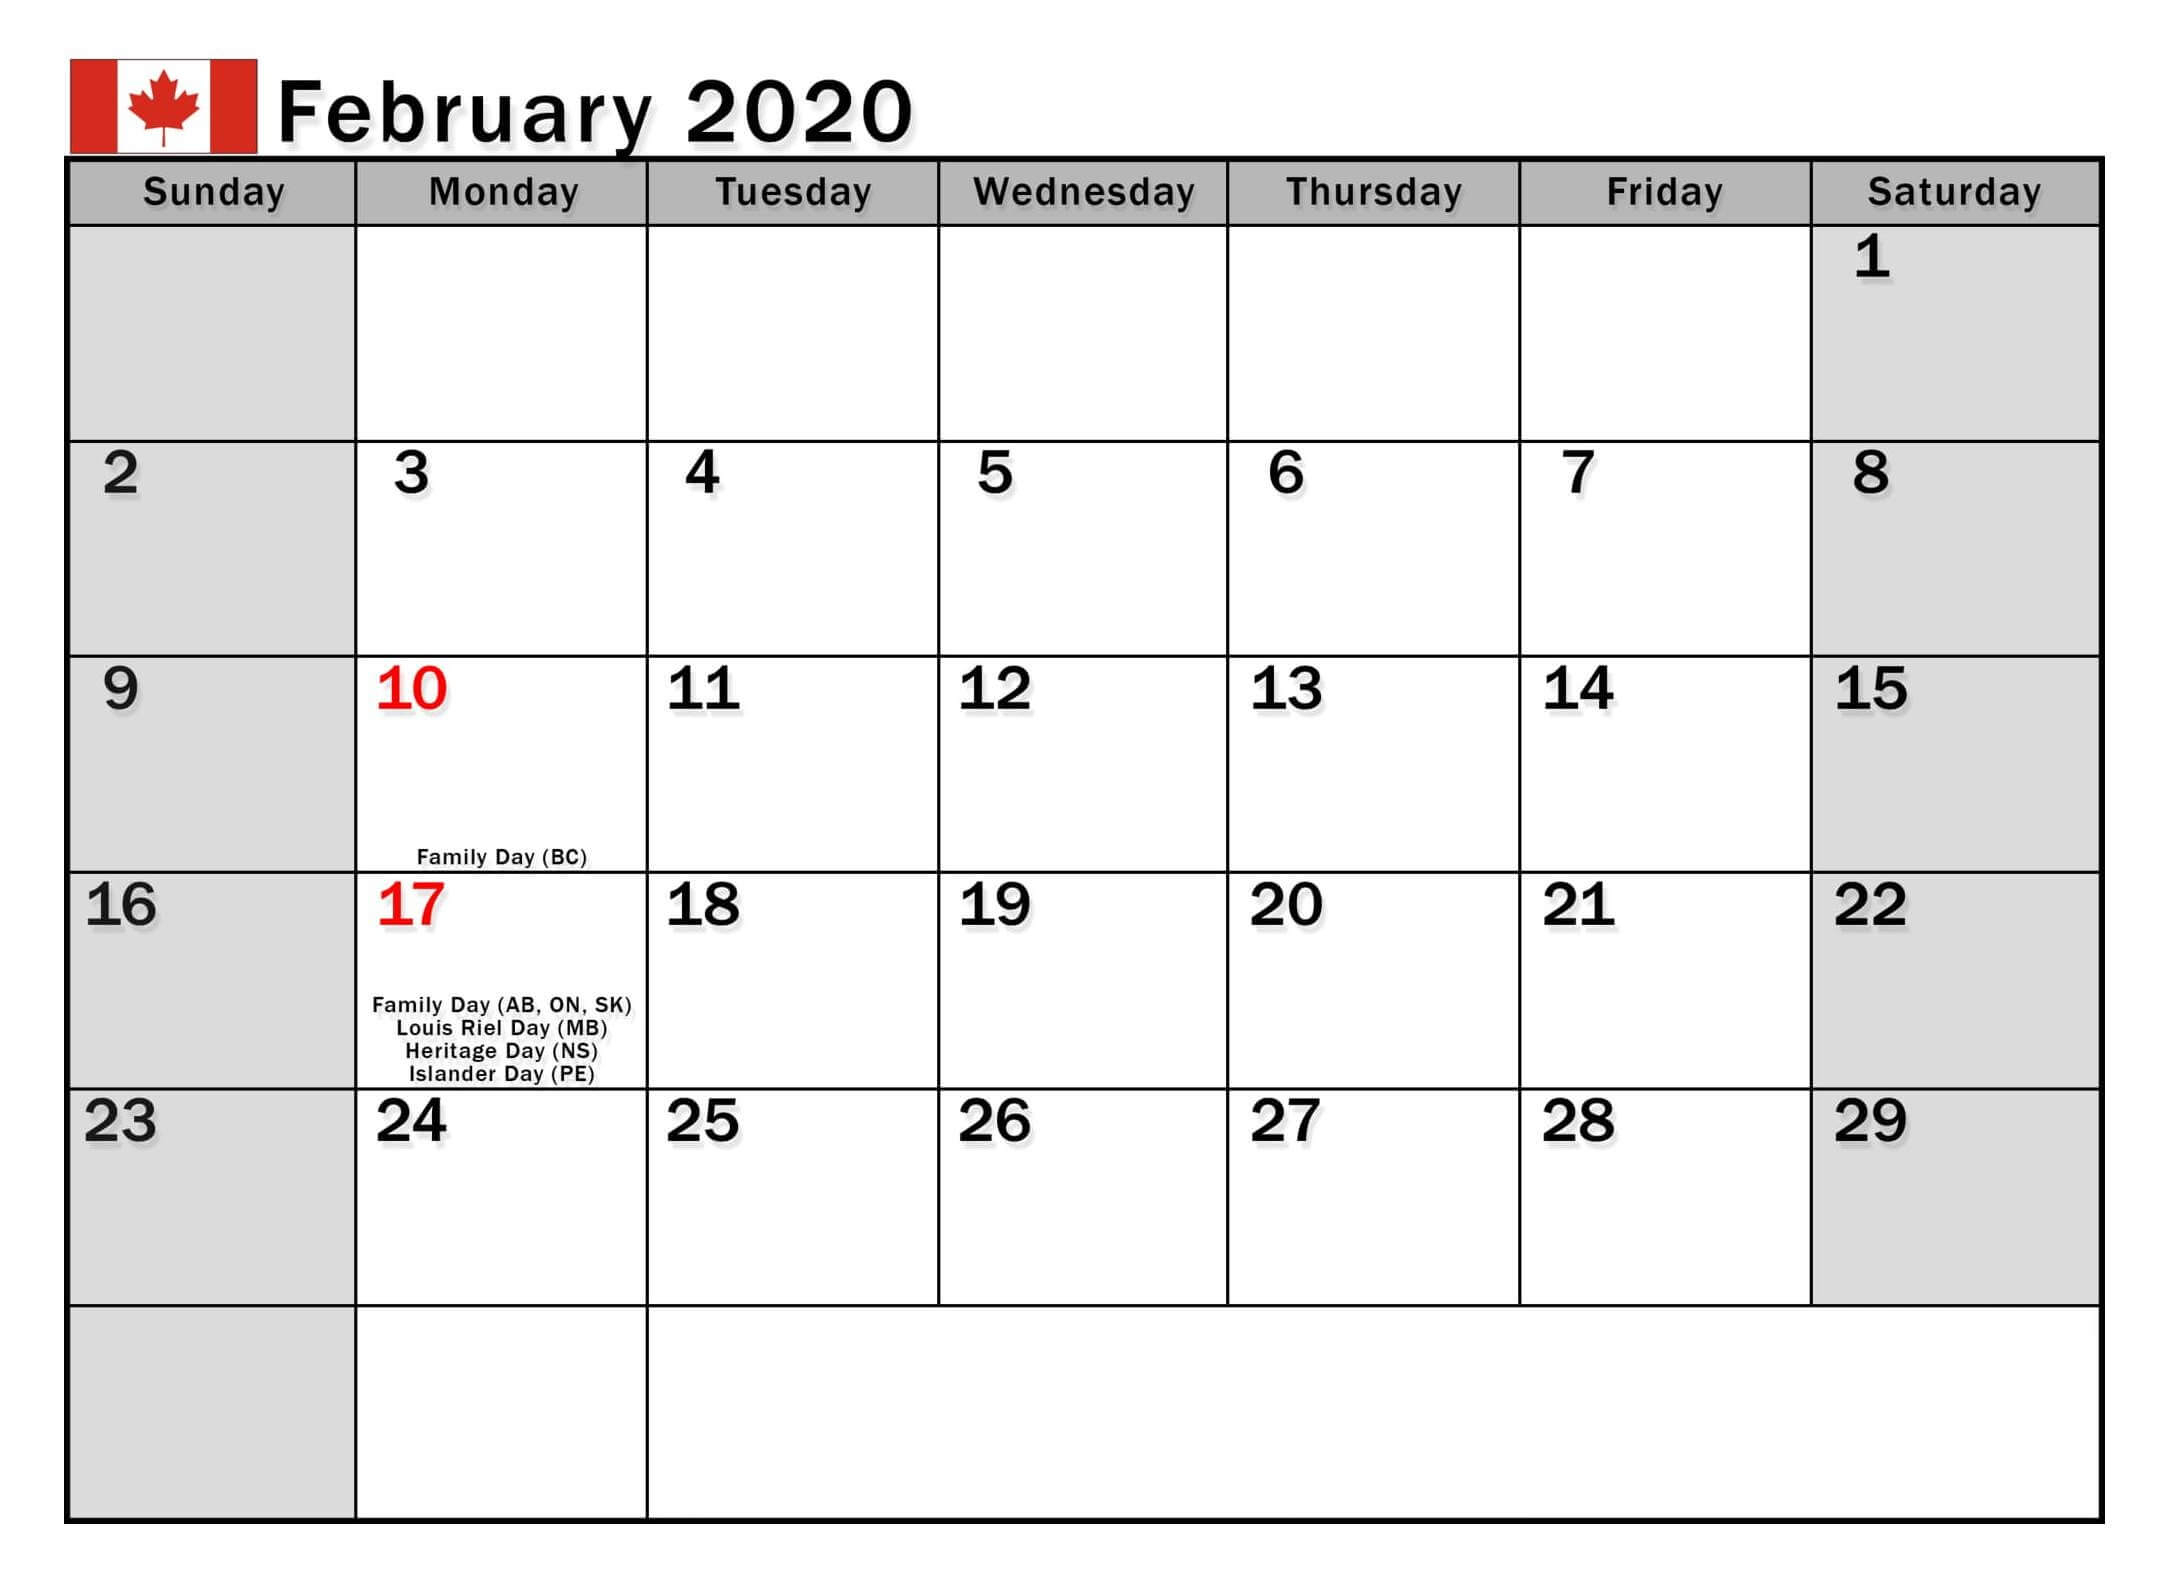 February 2020 Calendar Canada Bank Holidays - 2019 Calendars